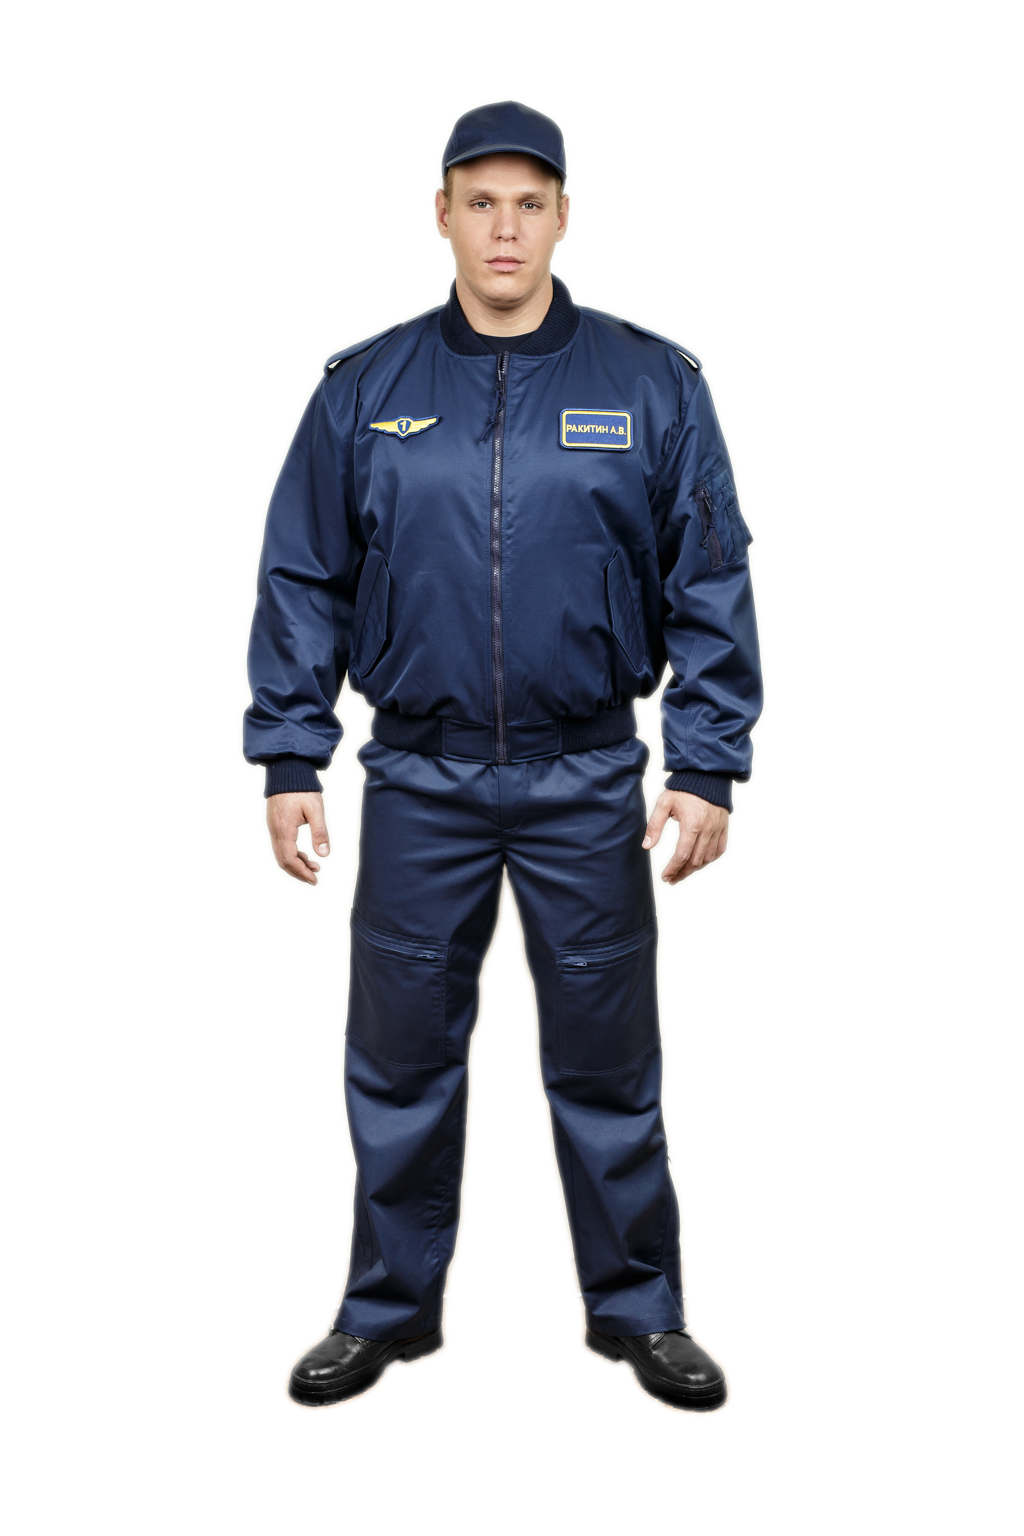 Купить техническую форму. Полетный костюм Кондор м83 синий. Зимняя куртка пилота ВКС. Зимняя форма ВКС лётно техническая. Куртка пилот охрана.